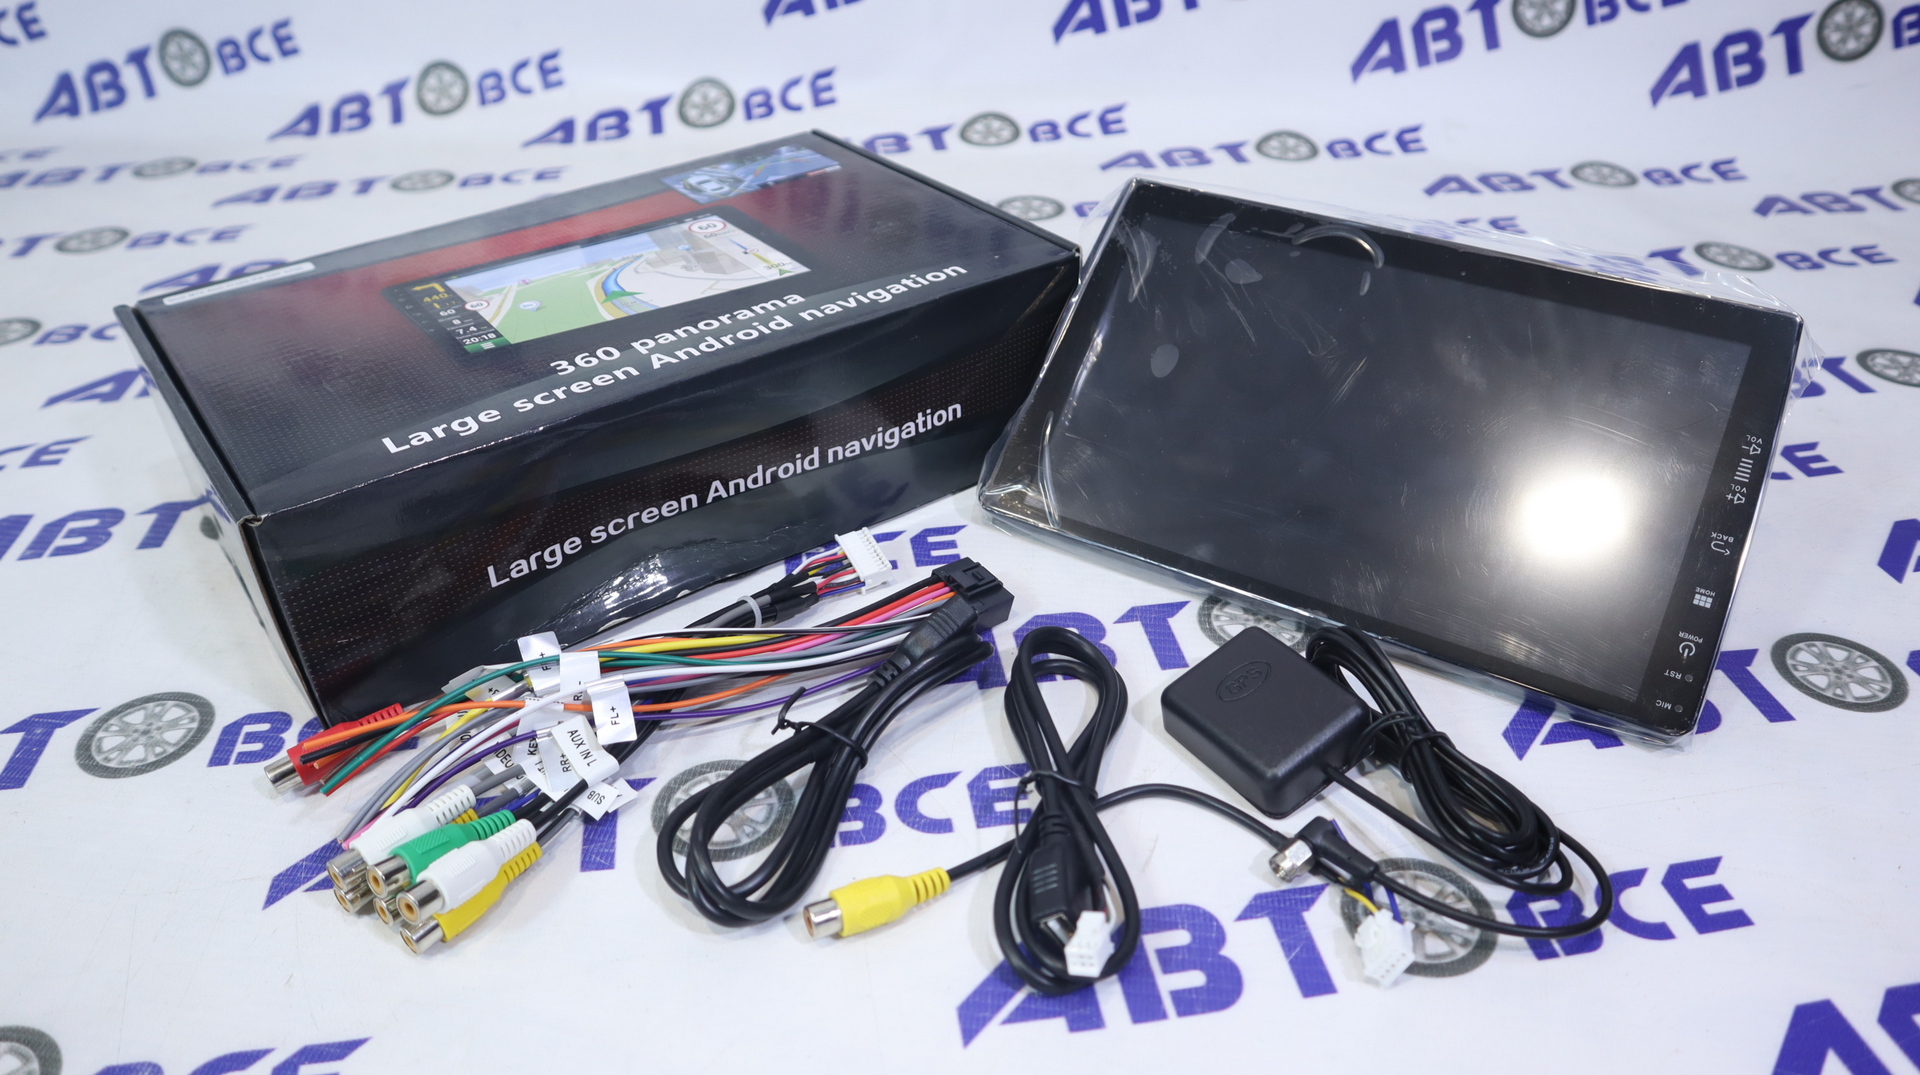 Автомагнитола (магнитофон) 2din черная (USB/BT/SD/FM/AUX/RDS/GPS/AM) Android 10.0 ОП 2Гб+32Гб 9